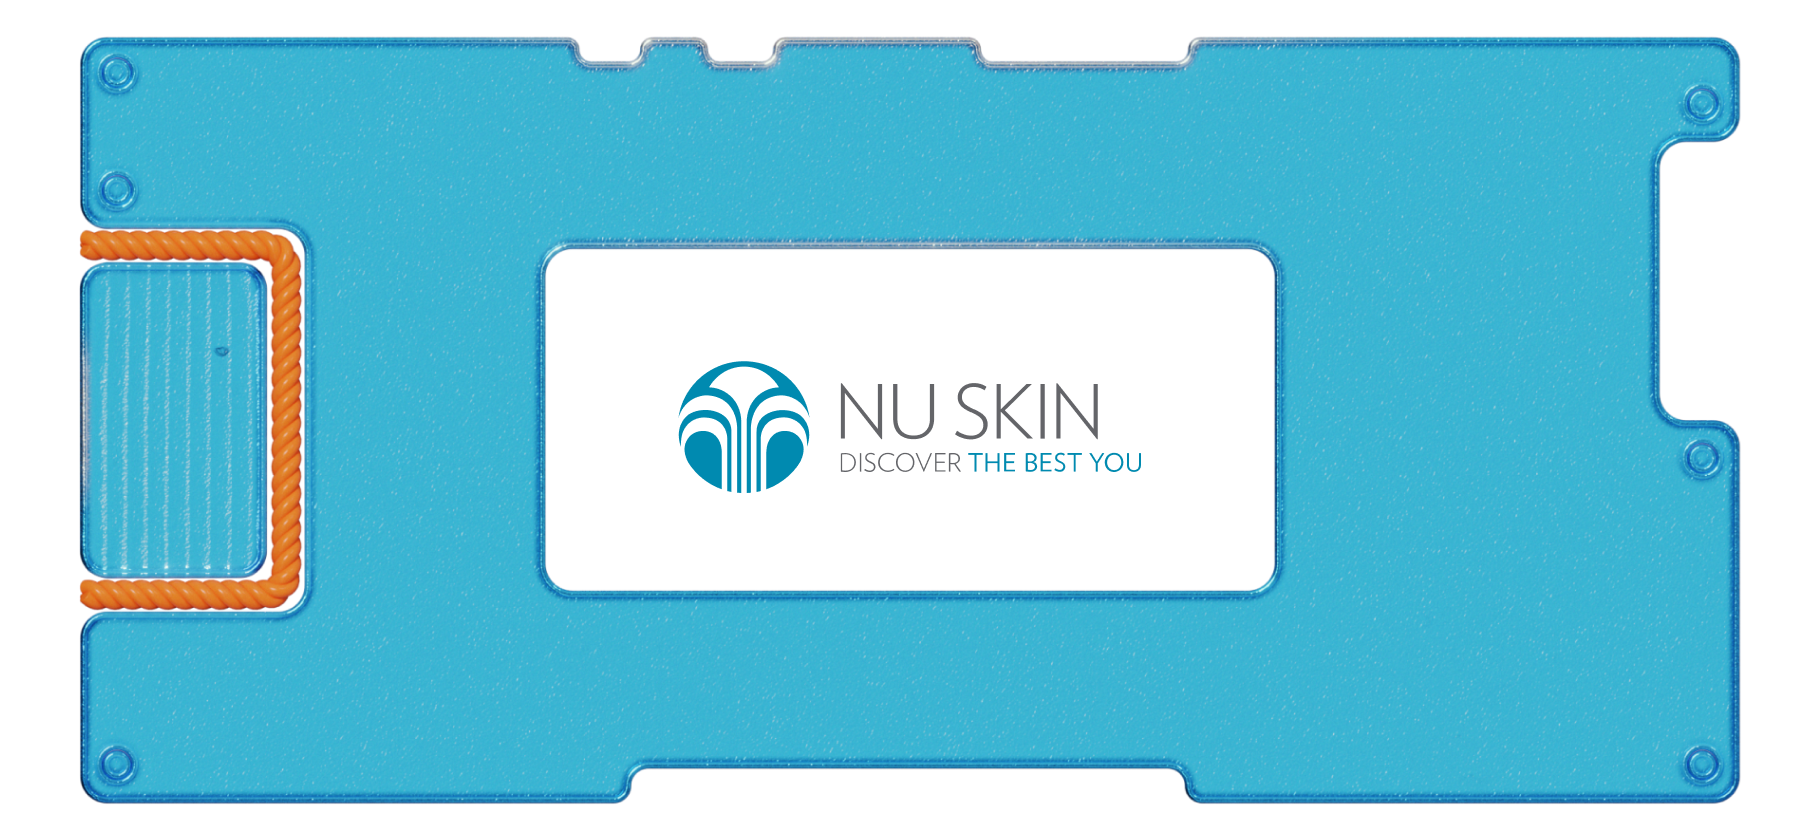 Инвестируем в Nu Skin: ухаживаем за собой и получаем дивиденды